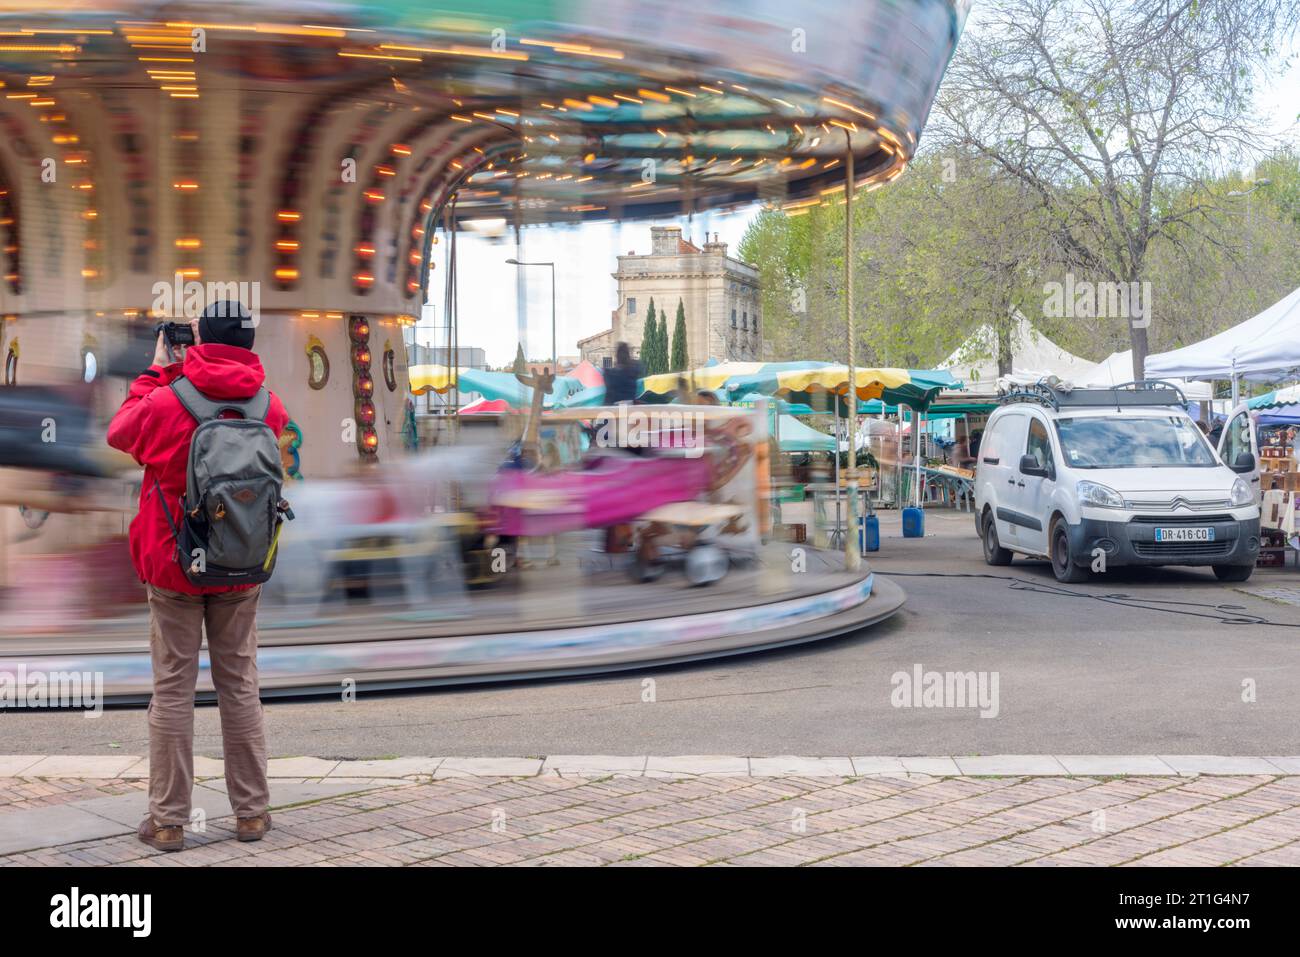 Un touriste prend une photo d'un manège en action au marché en plein air de Saurday à Arles, en Provence, dans le sud de la France. Banque D'Images